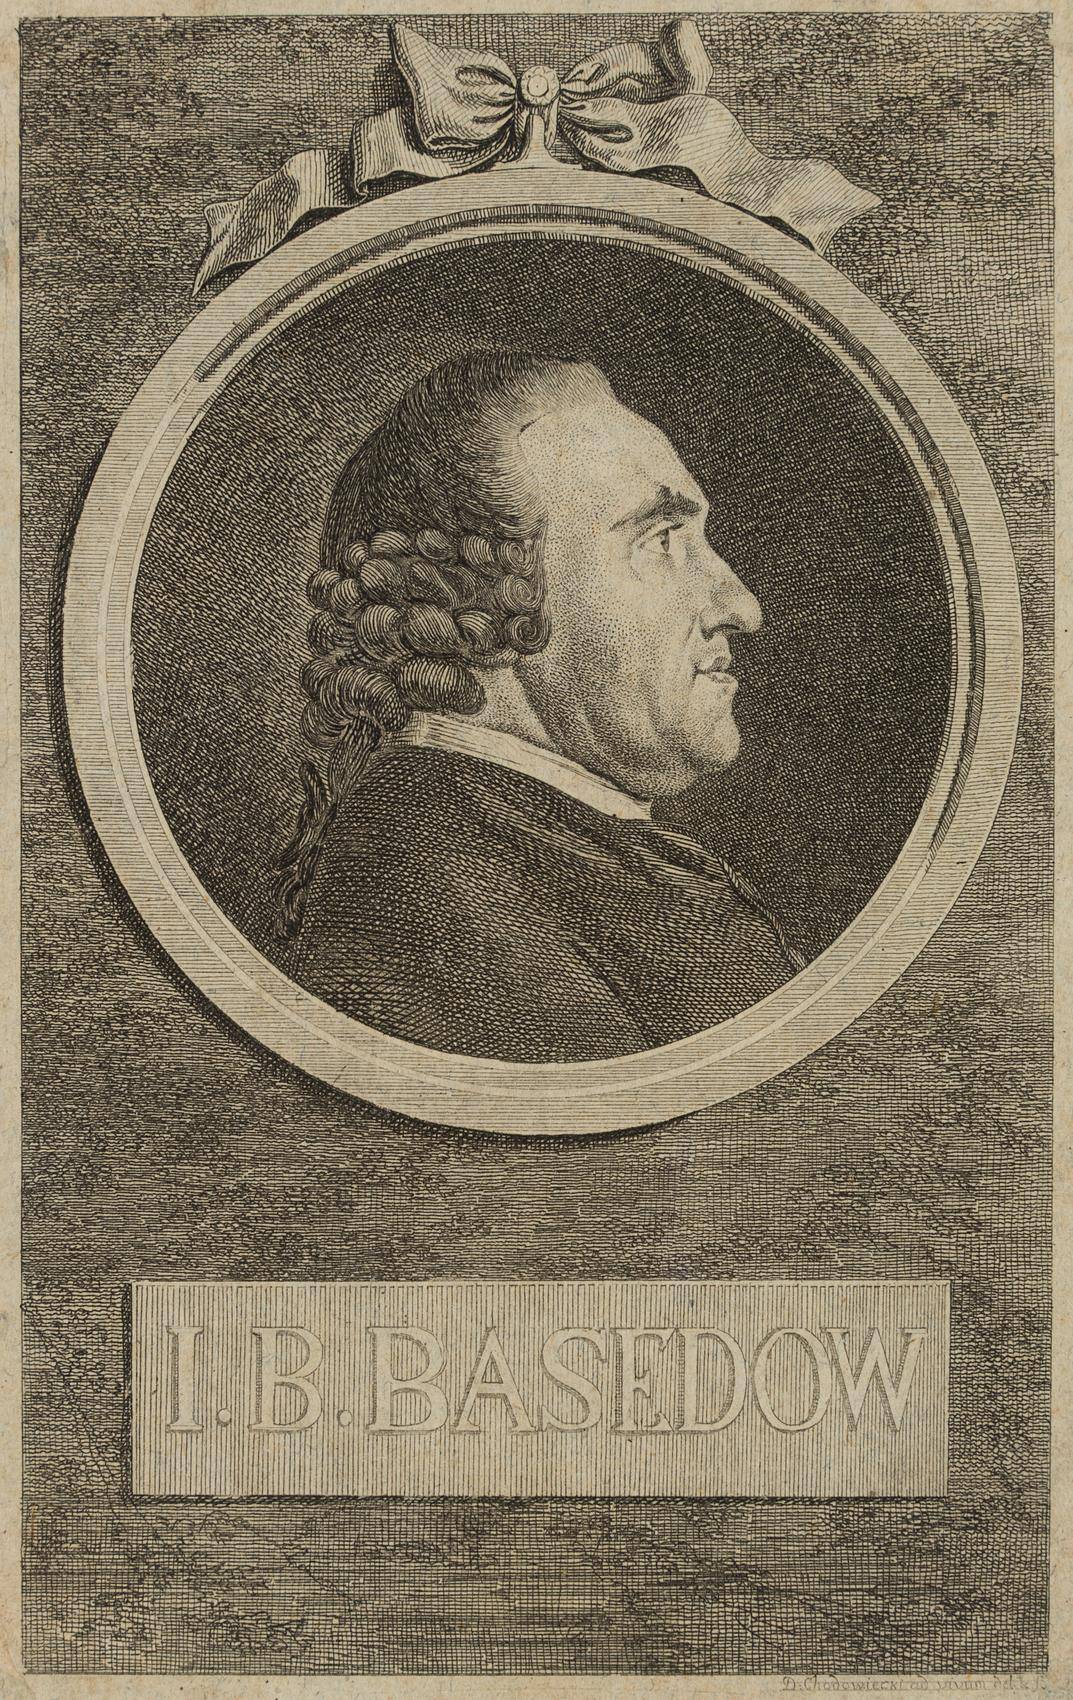 Portrait von Johann Bernhard Basedow